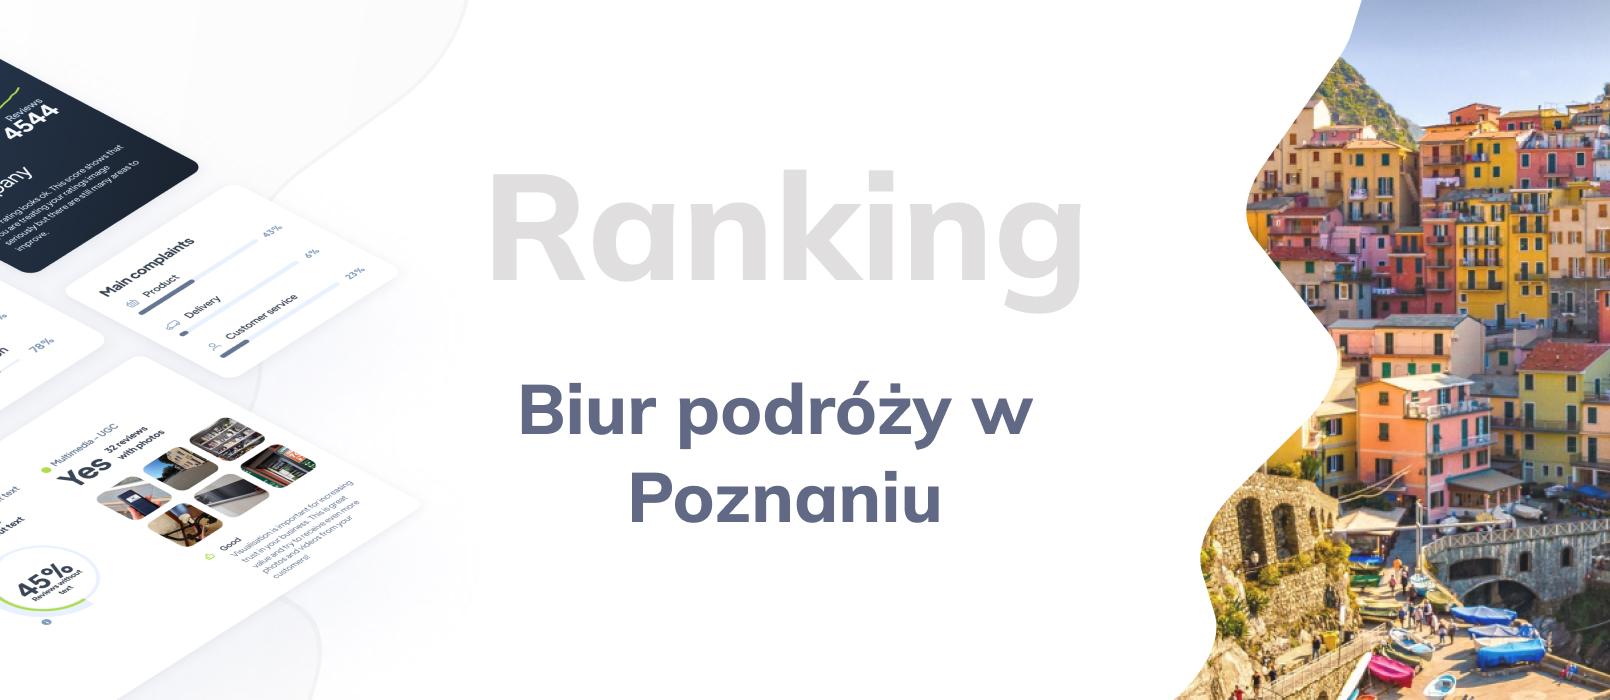 Biura podróży w Poznaniu - ranking TOP 10